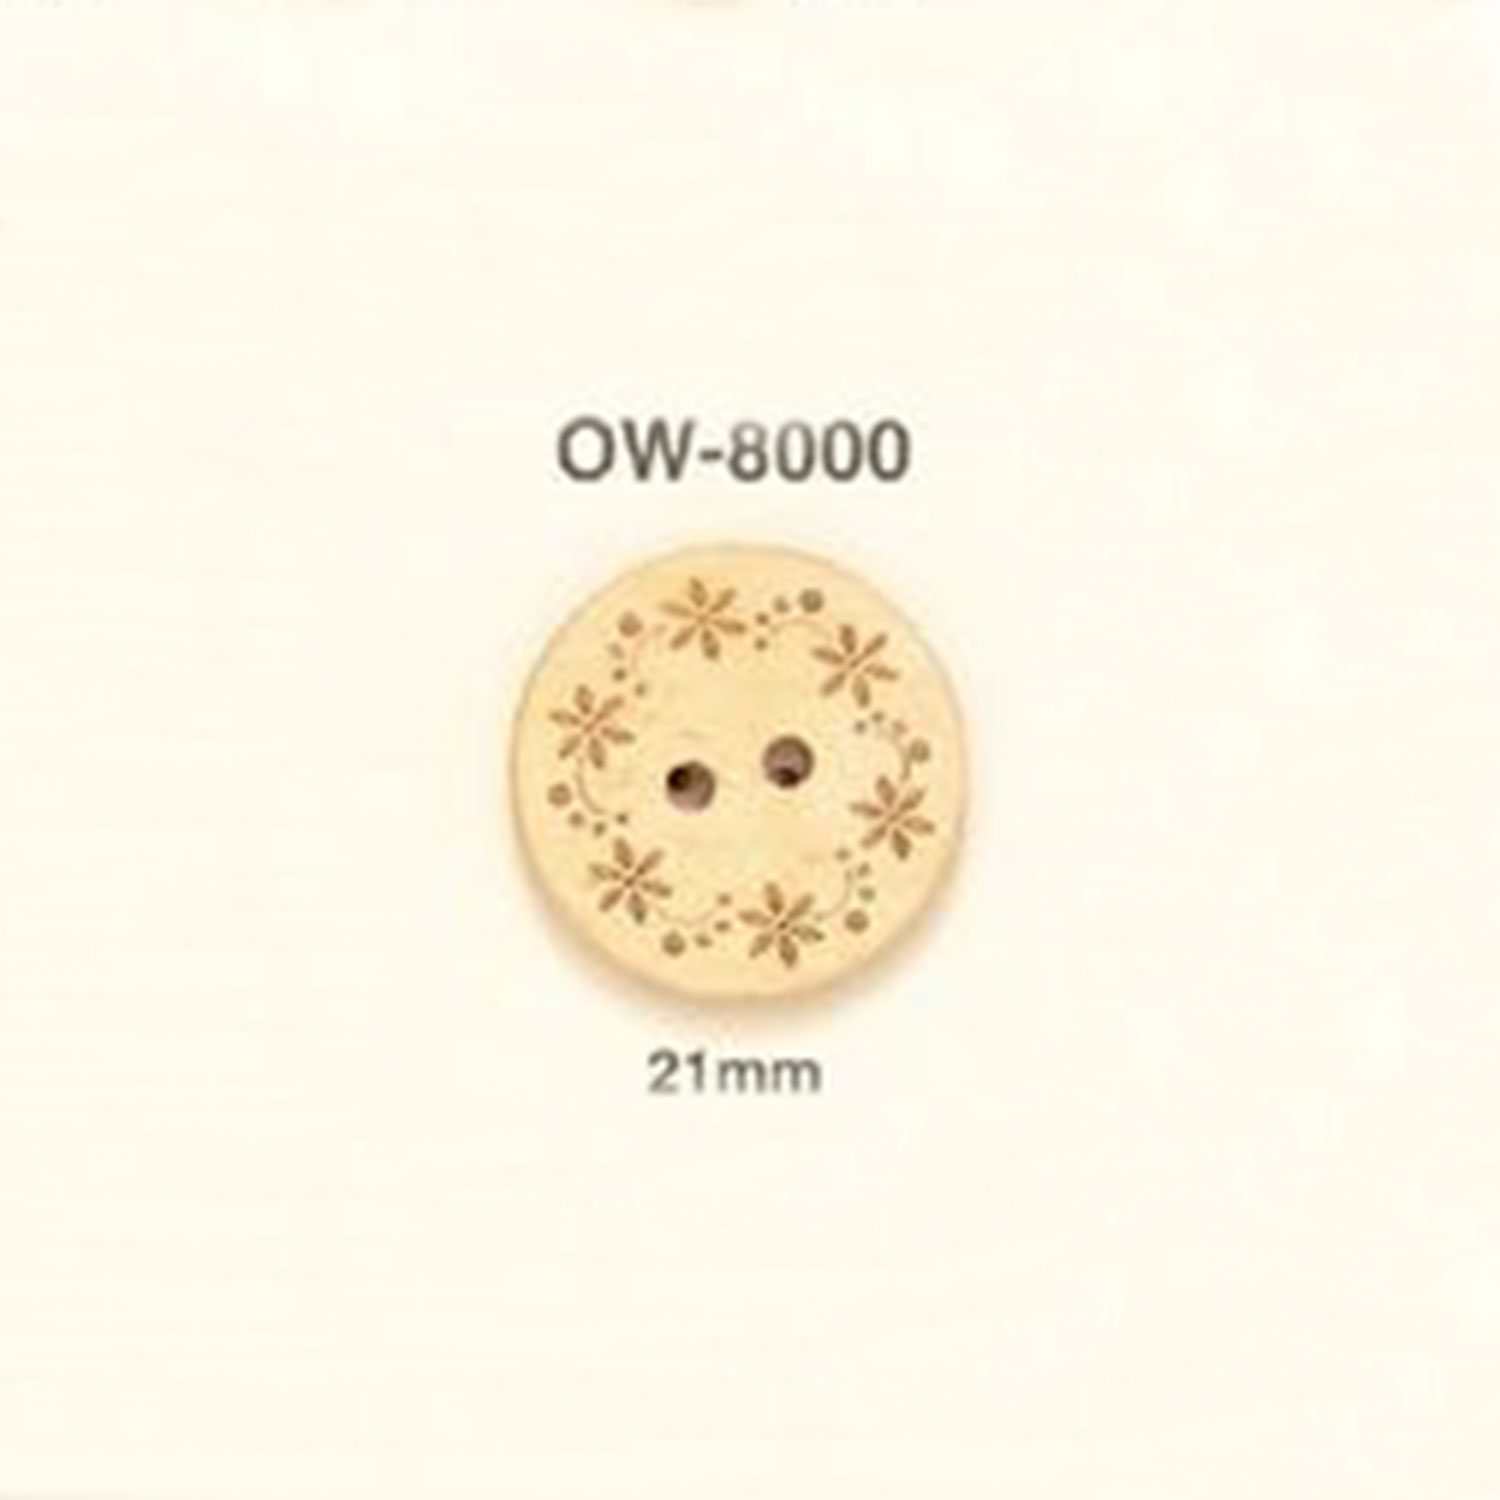 OW-8000 花卉圖形元素木製鈕扣 愛麗絲鈕扣